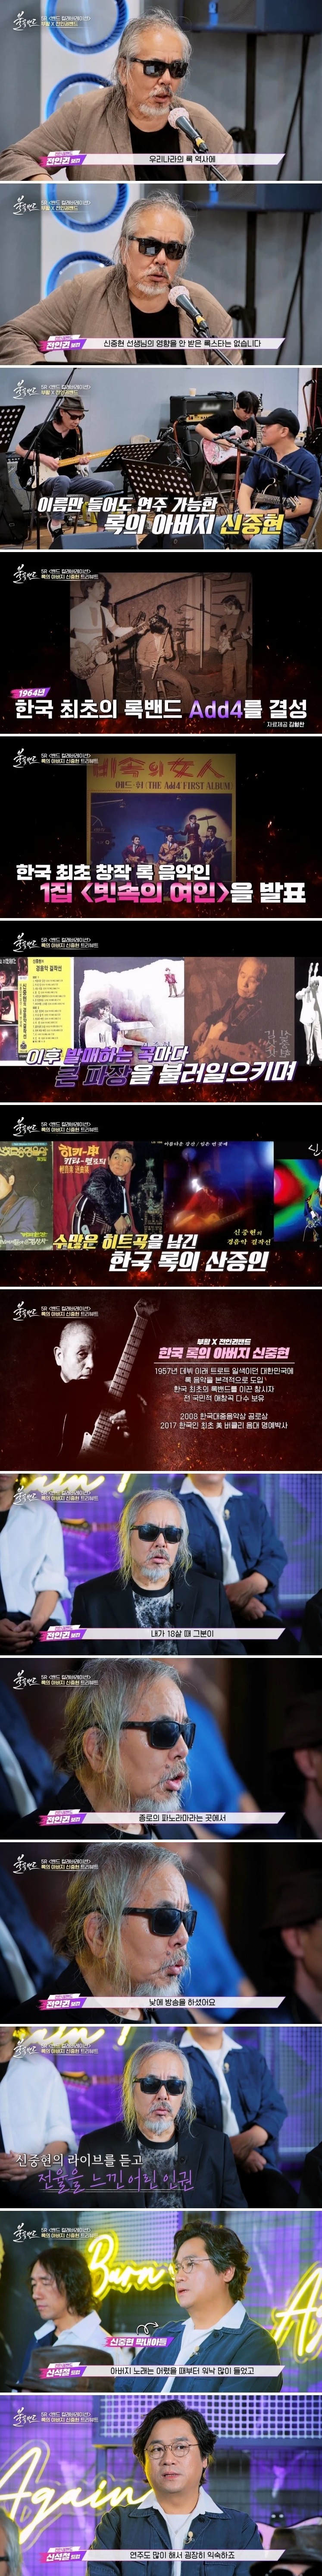 한국 록 역사에서 빼놓을 수 없는 인물